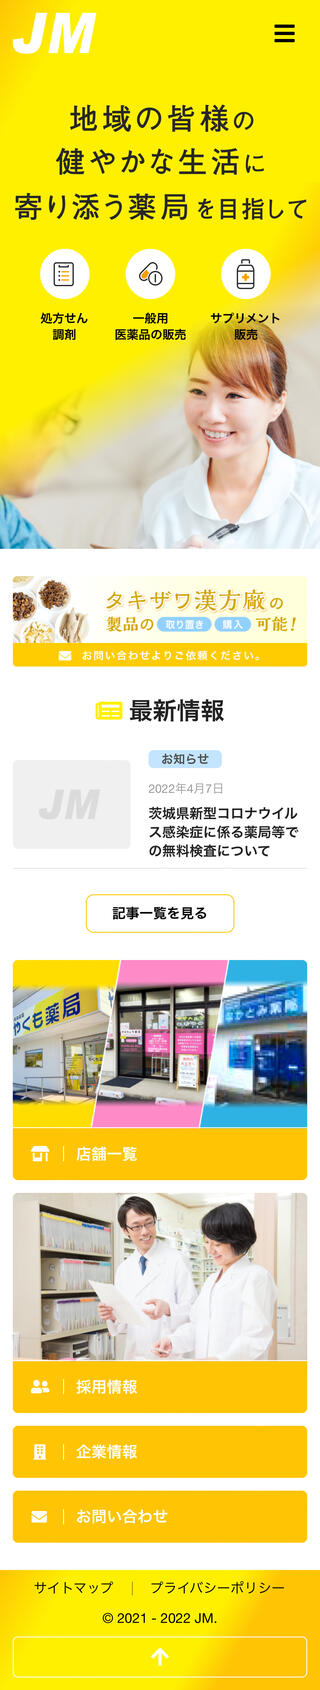 株式会社JMのスマートフォン画面